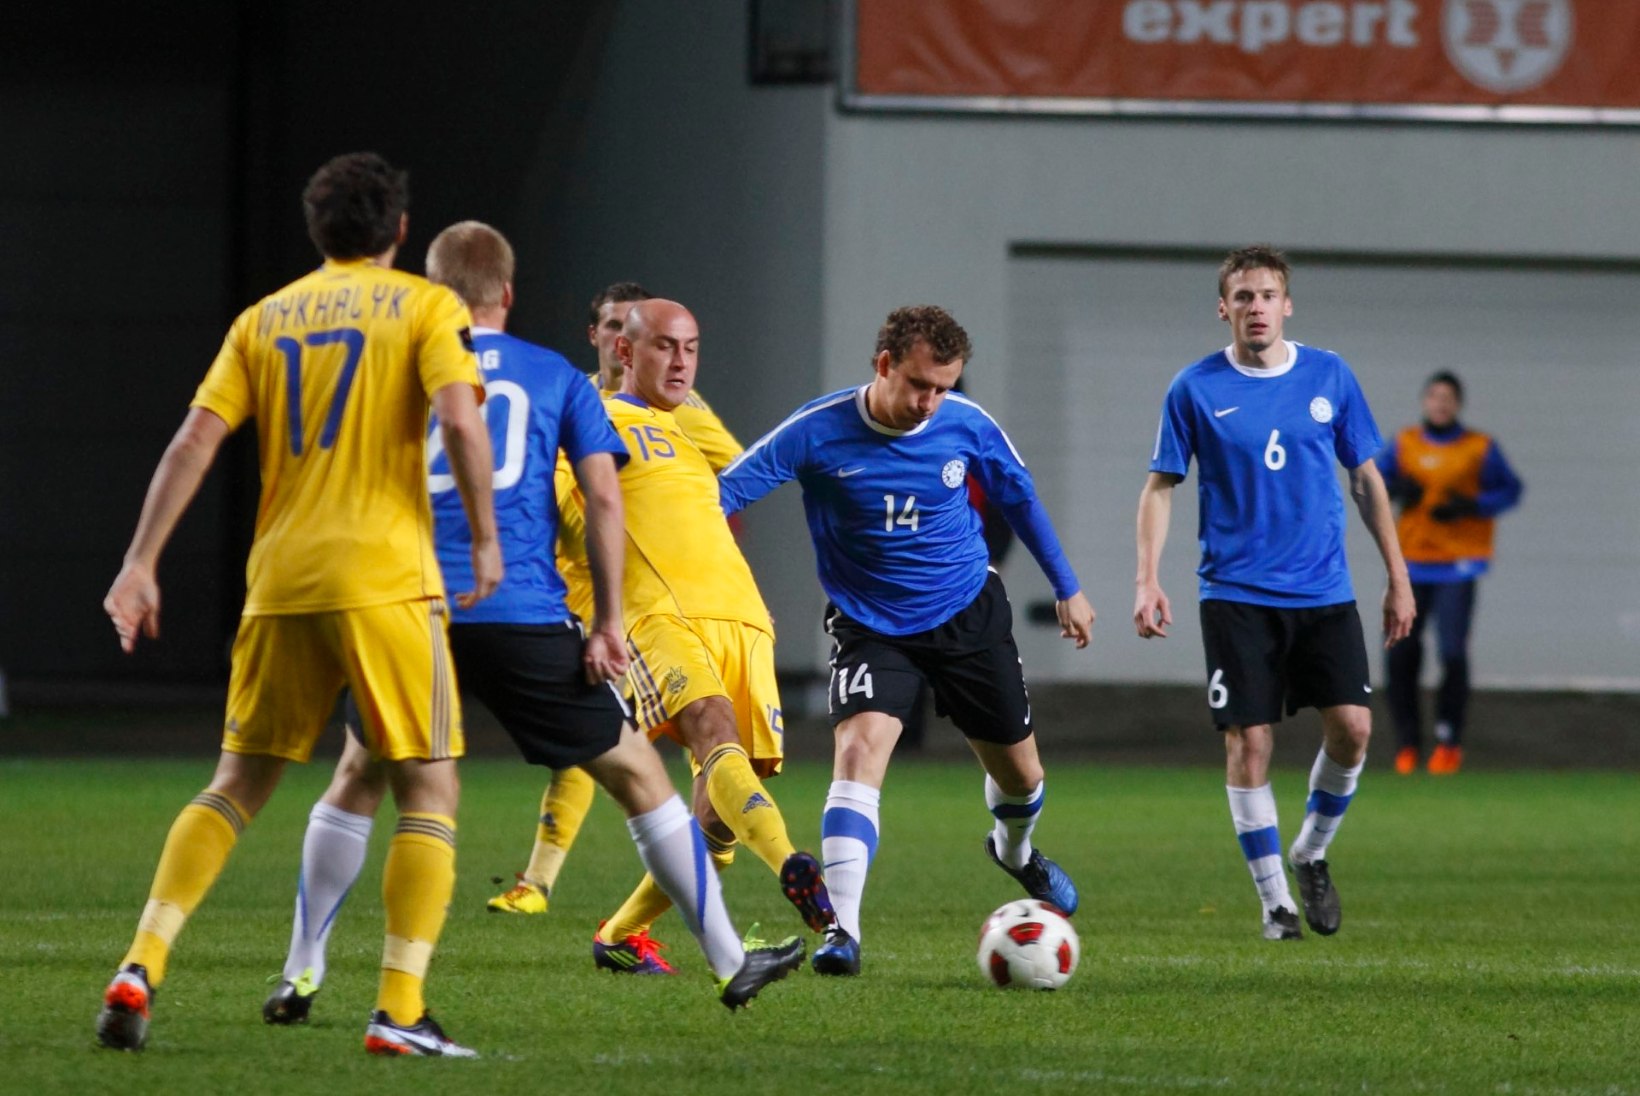 Eesti jalgpallikoondis vahetas Venemaa Ukraina vastu välja? Päris nii öelda ei saa...